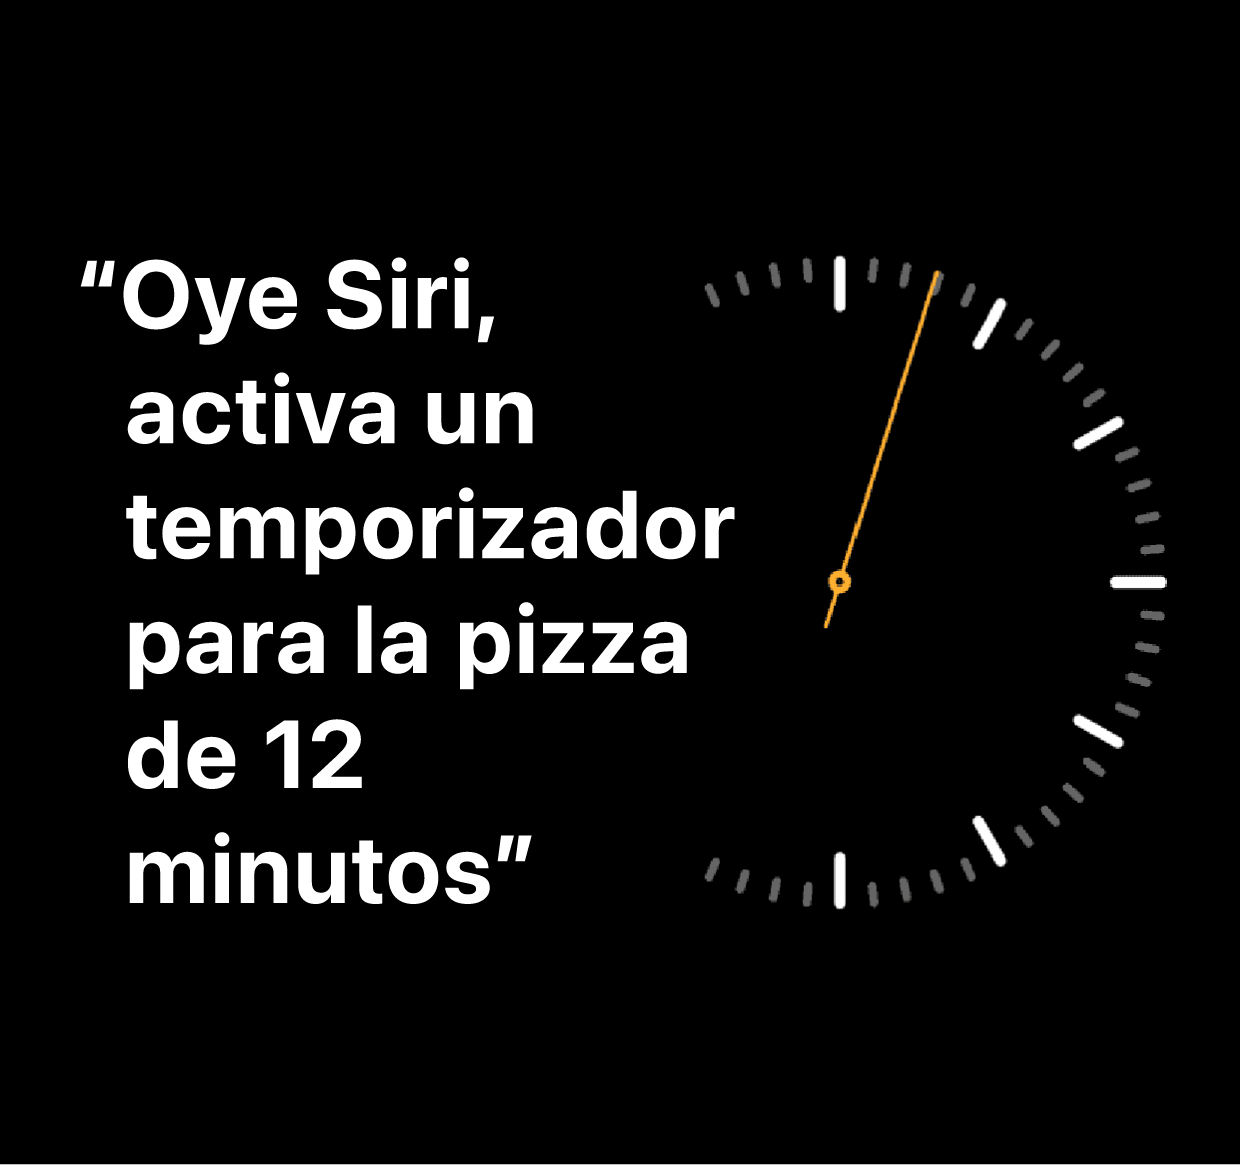 Ilustración de la frase “Oye Siri, activa un temporizador para la pizza de 12 minutos”.